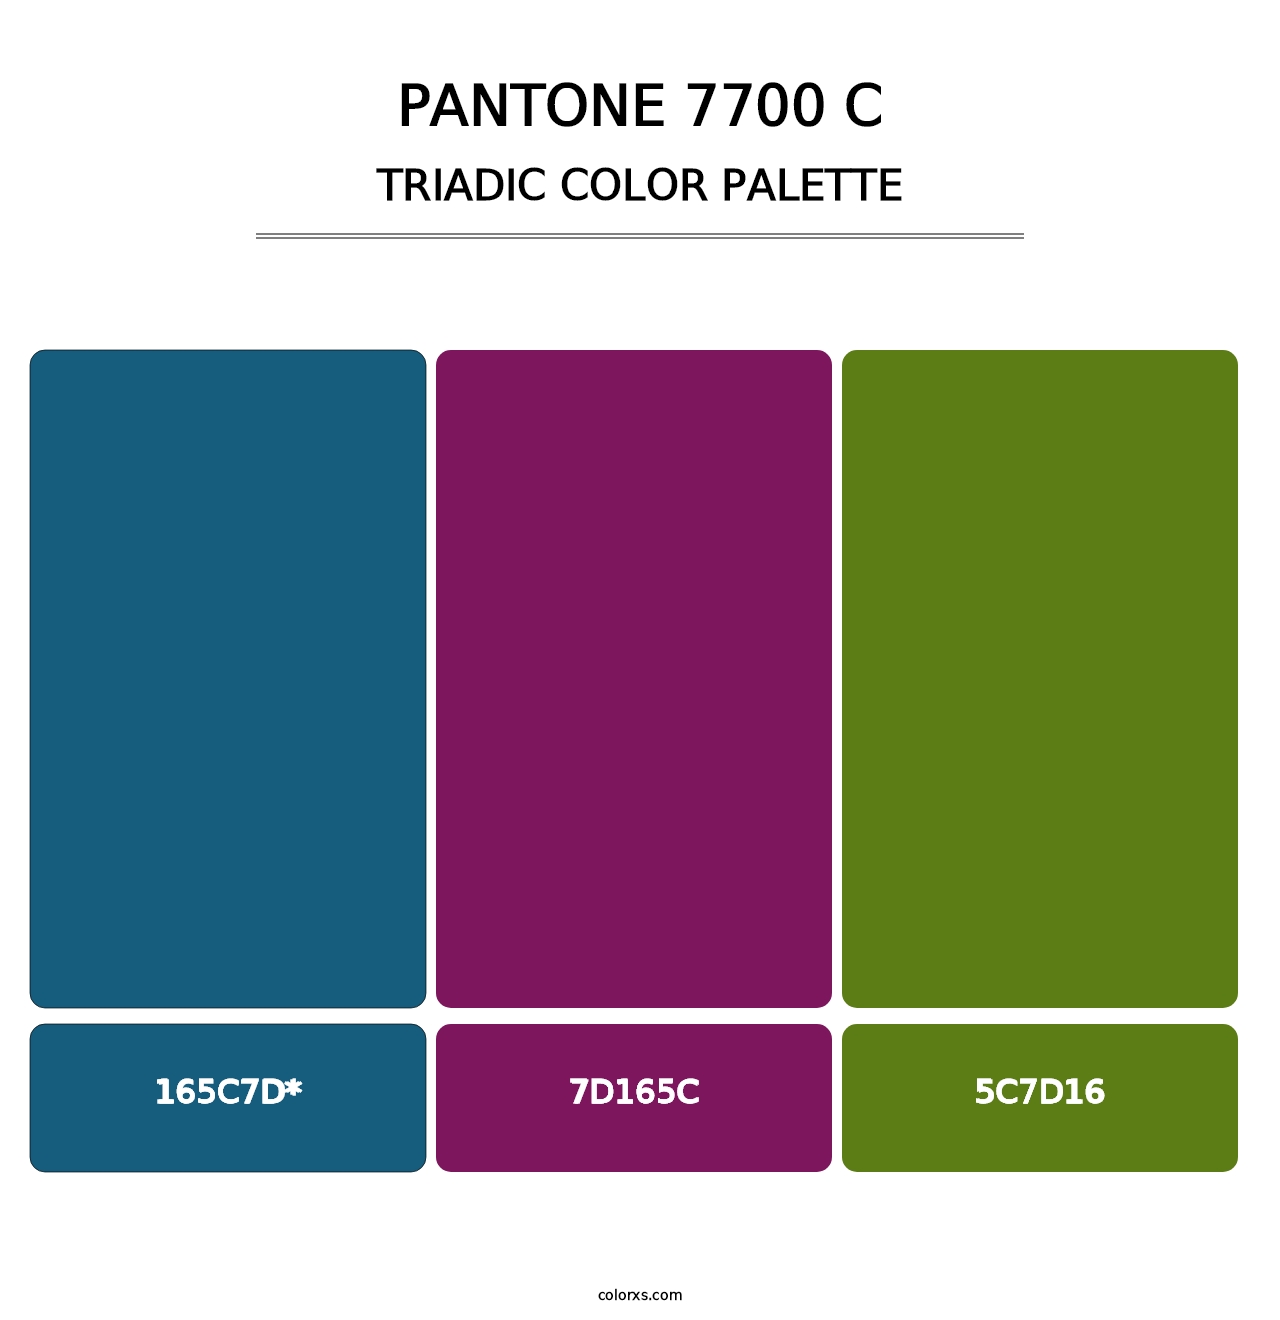 PANTONE 7700 C - Triadic Color Palette